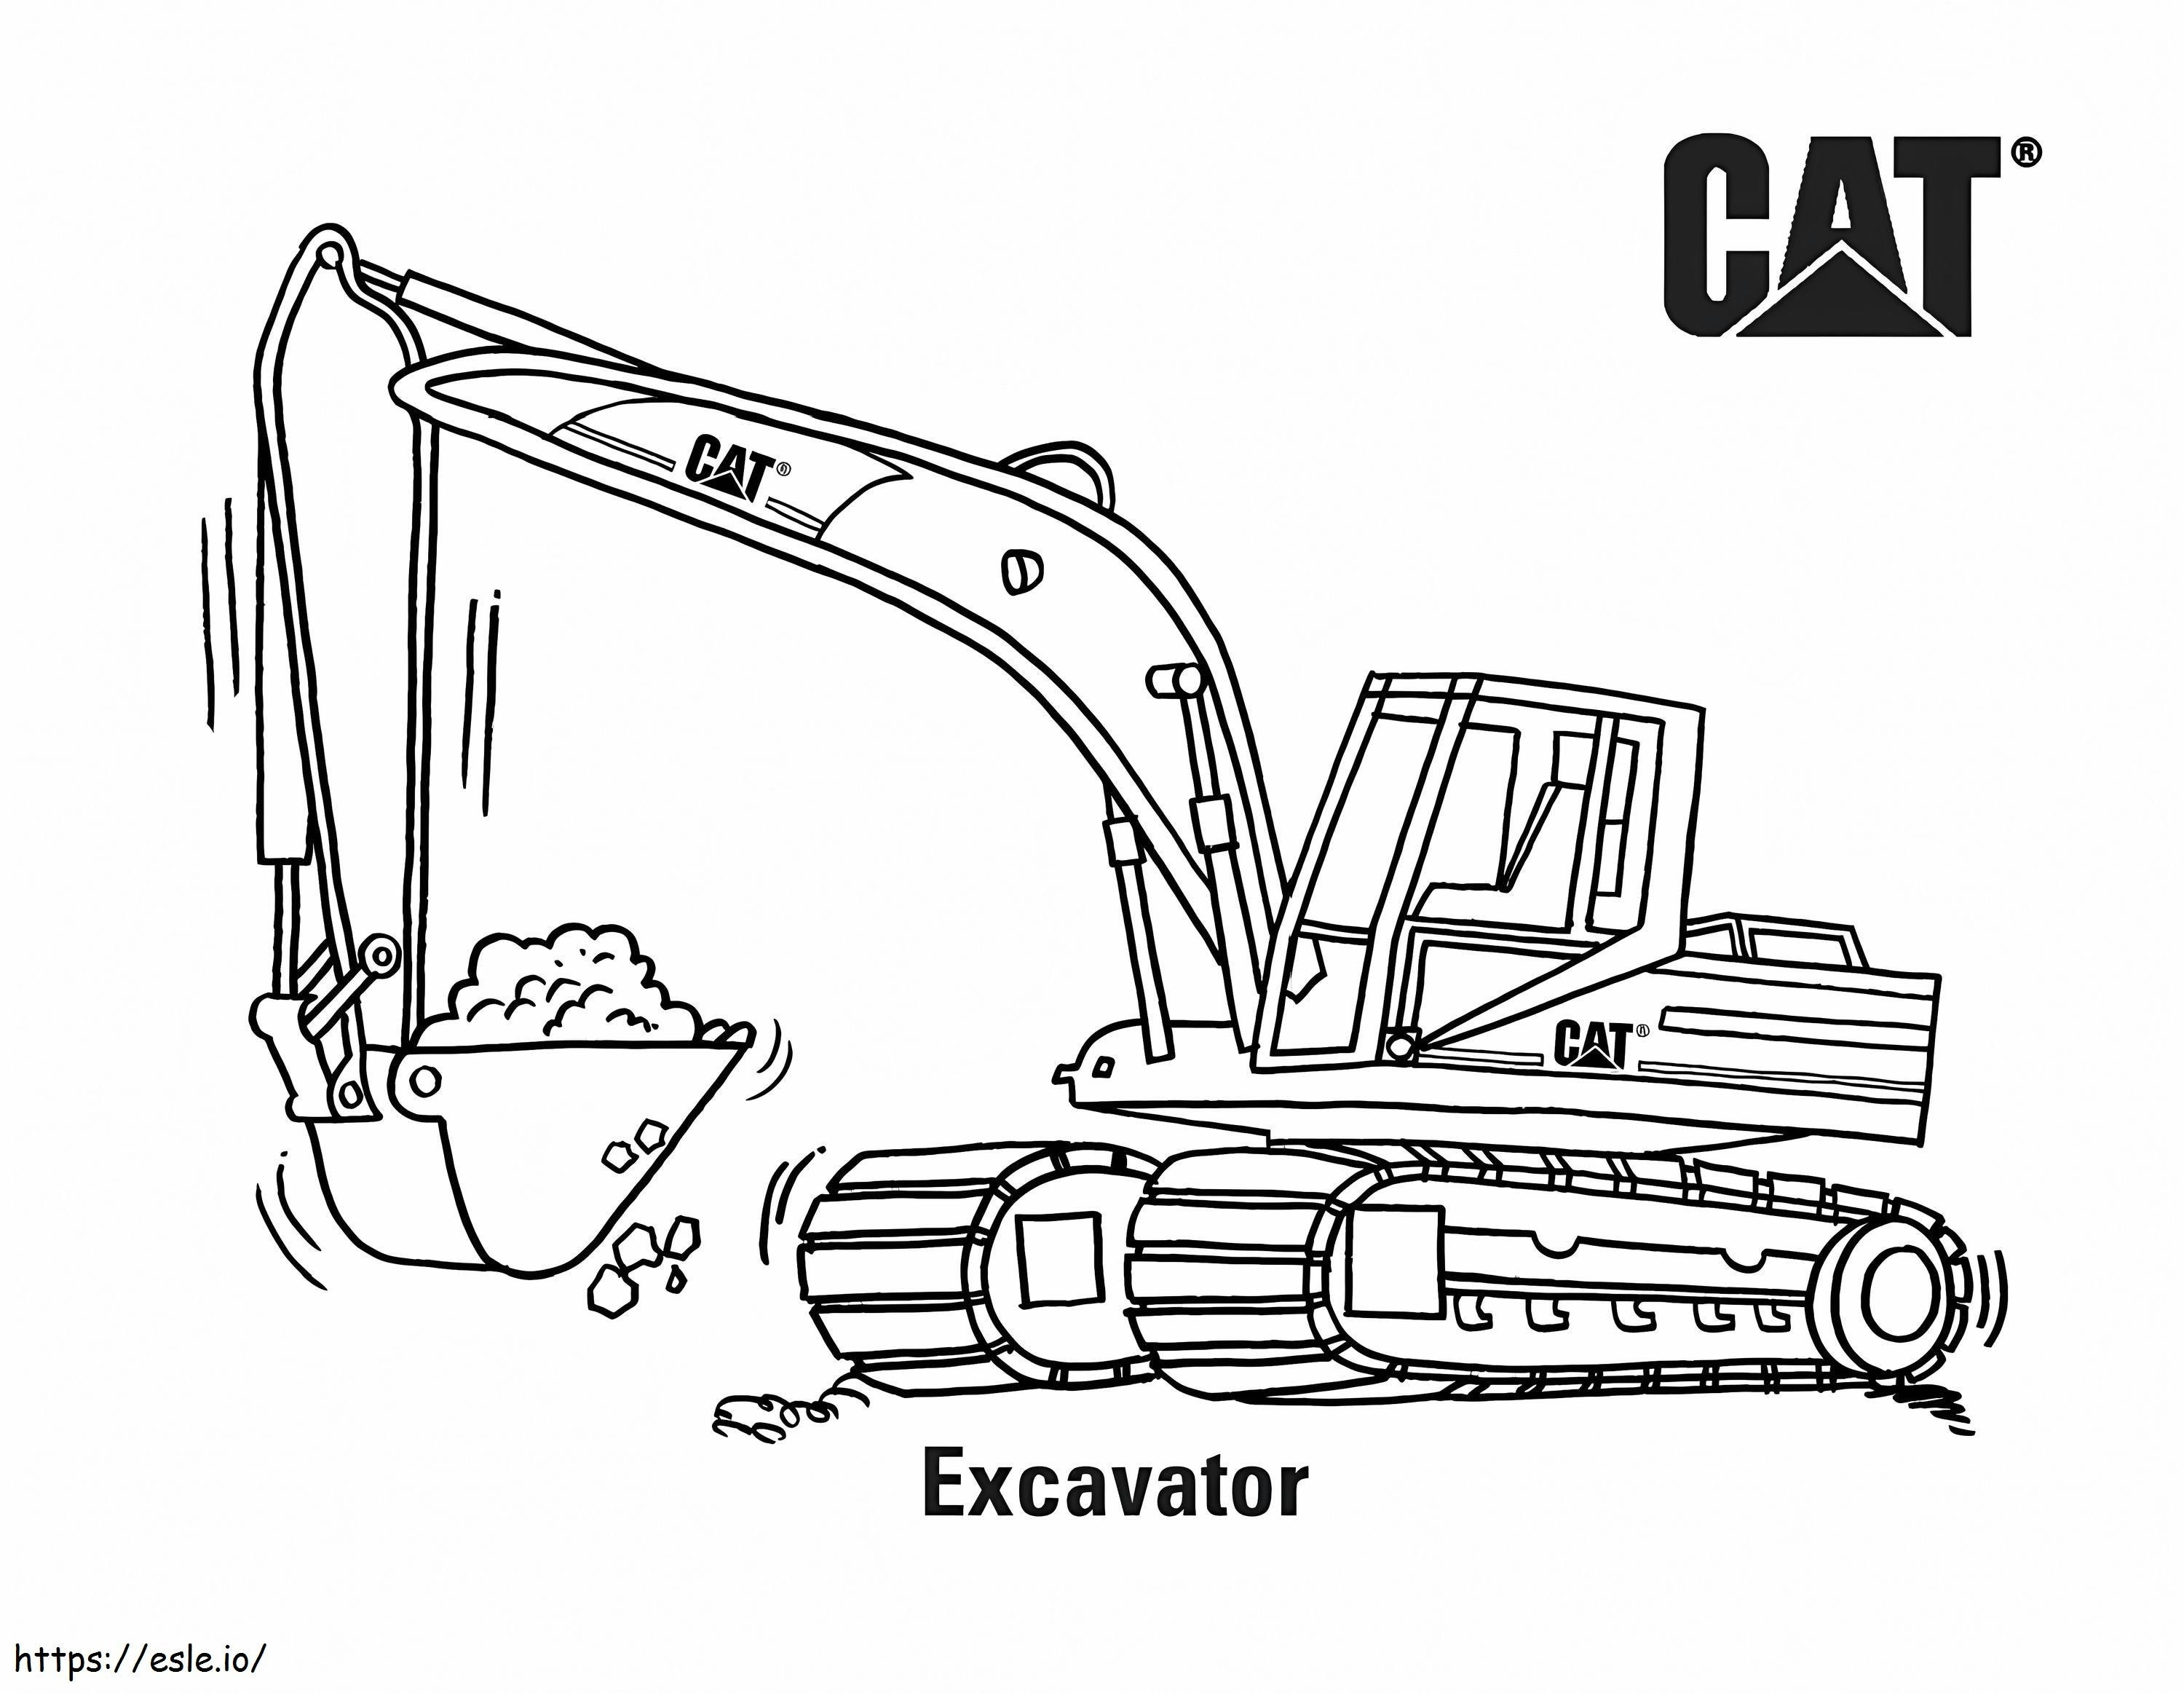  Excavator mediu Cat A4 E1600734819384 de colorat